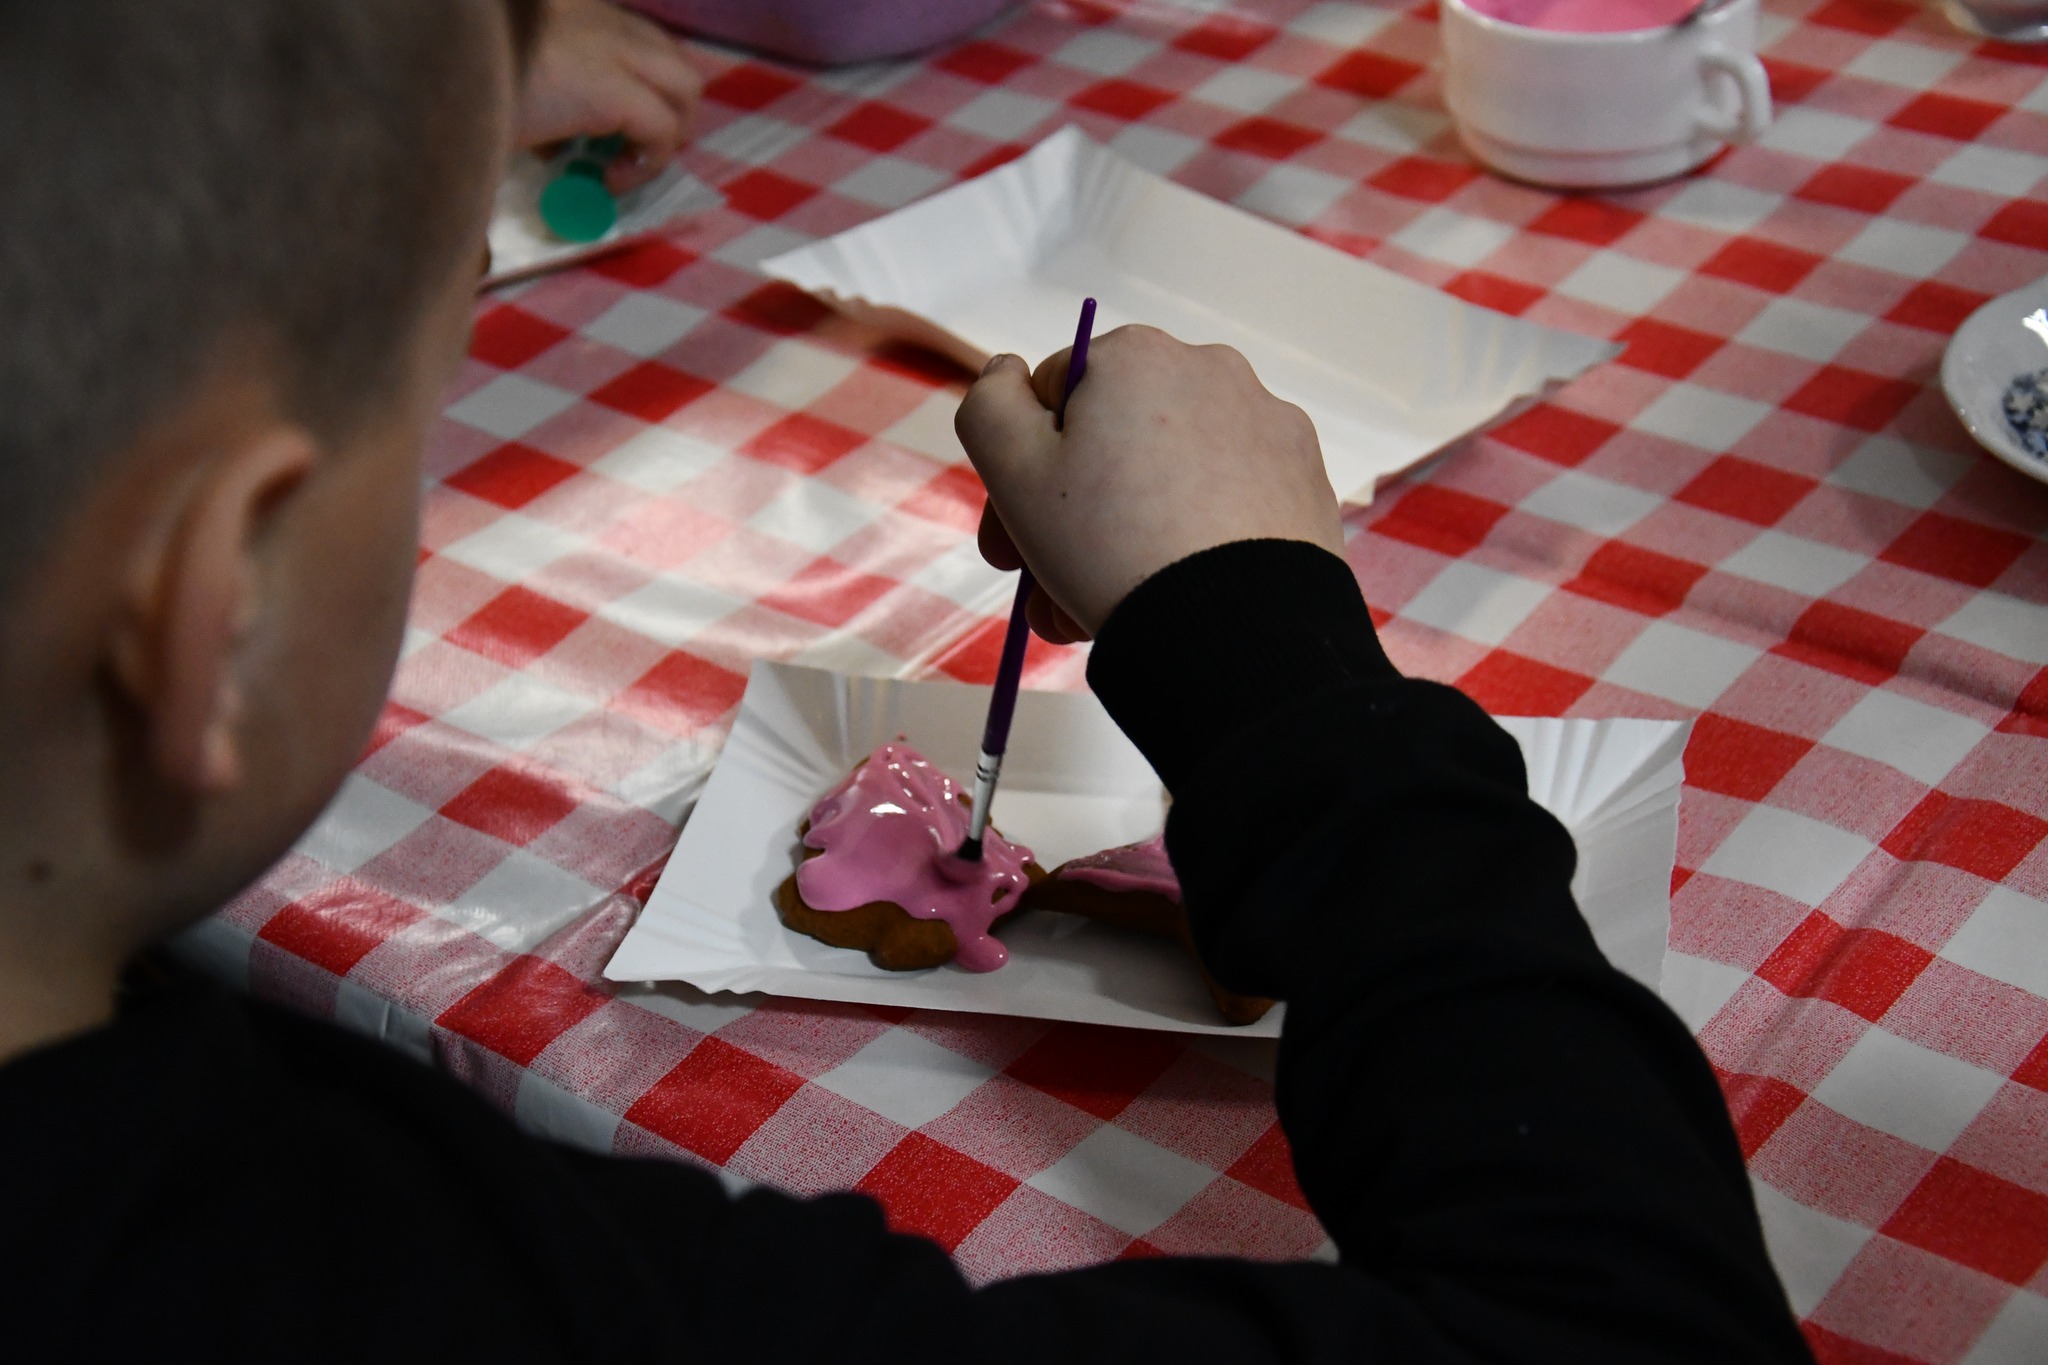 Chłopiec maluje różowym lukrem piernik w kształcie choinki.